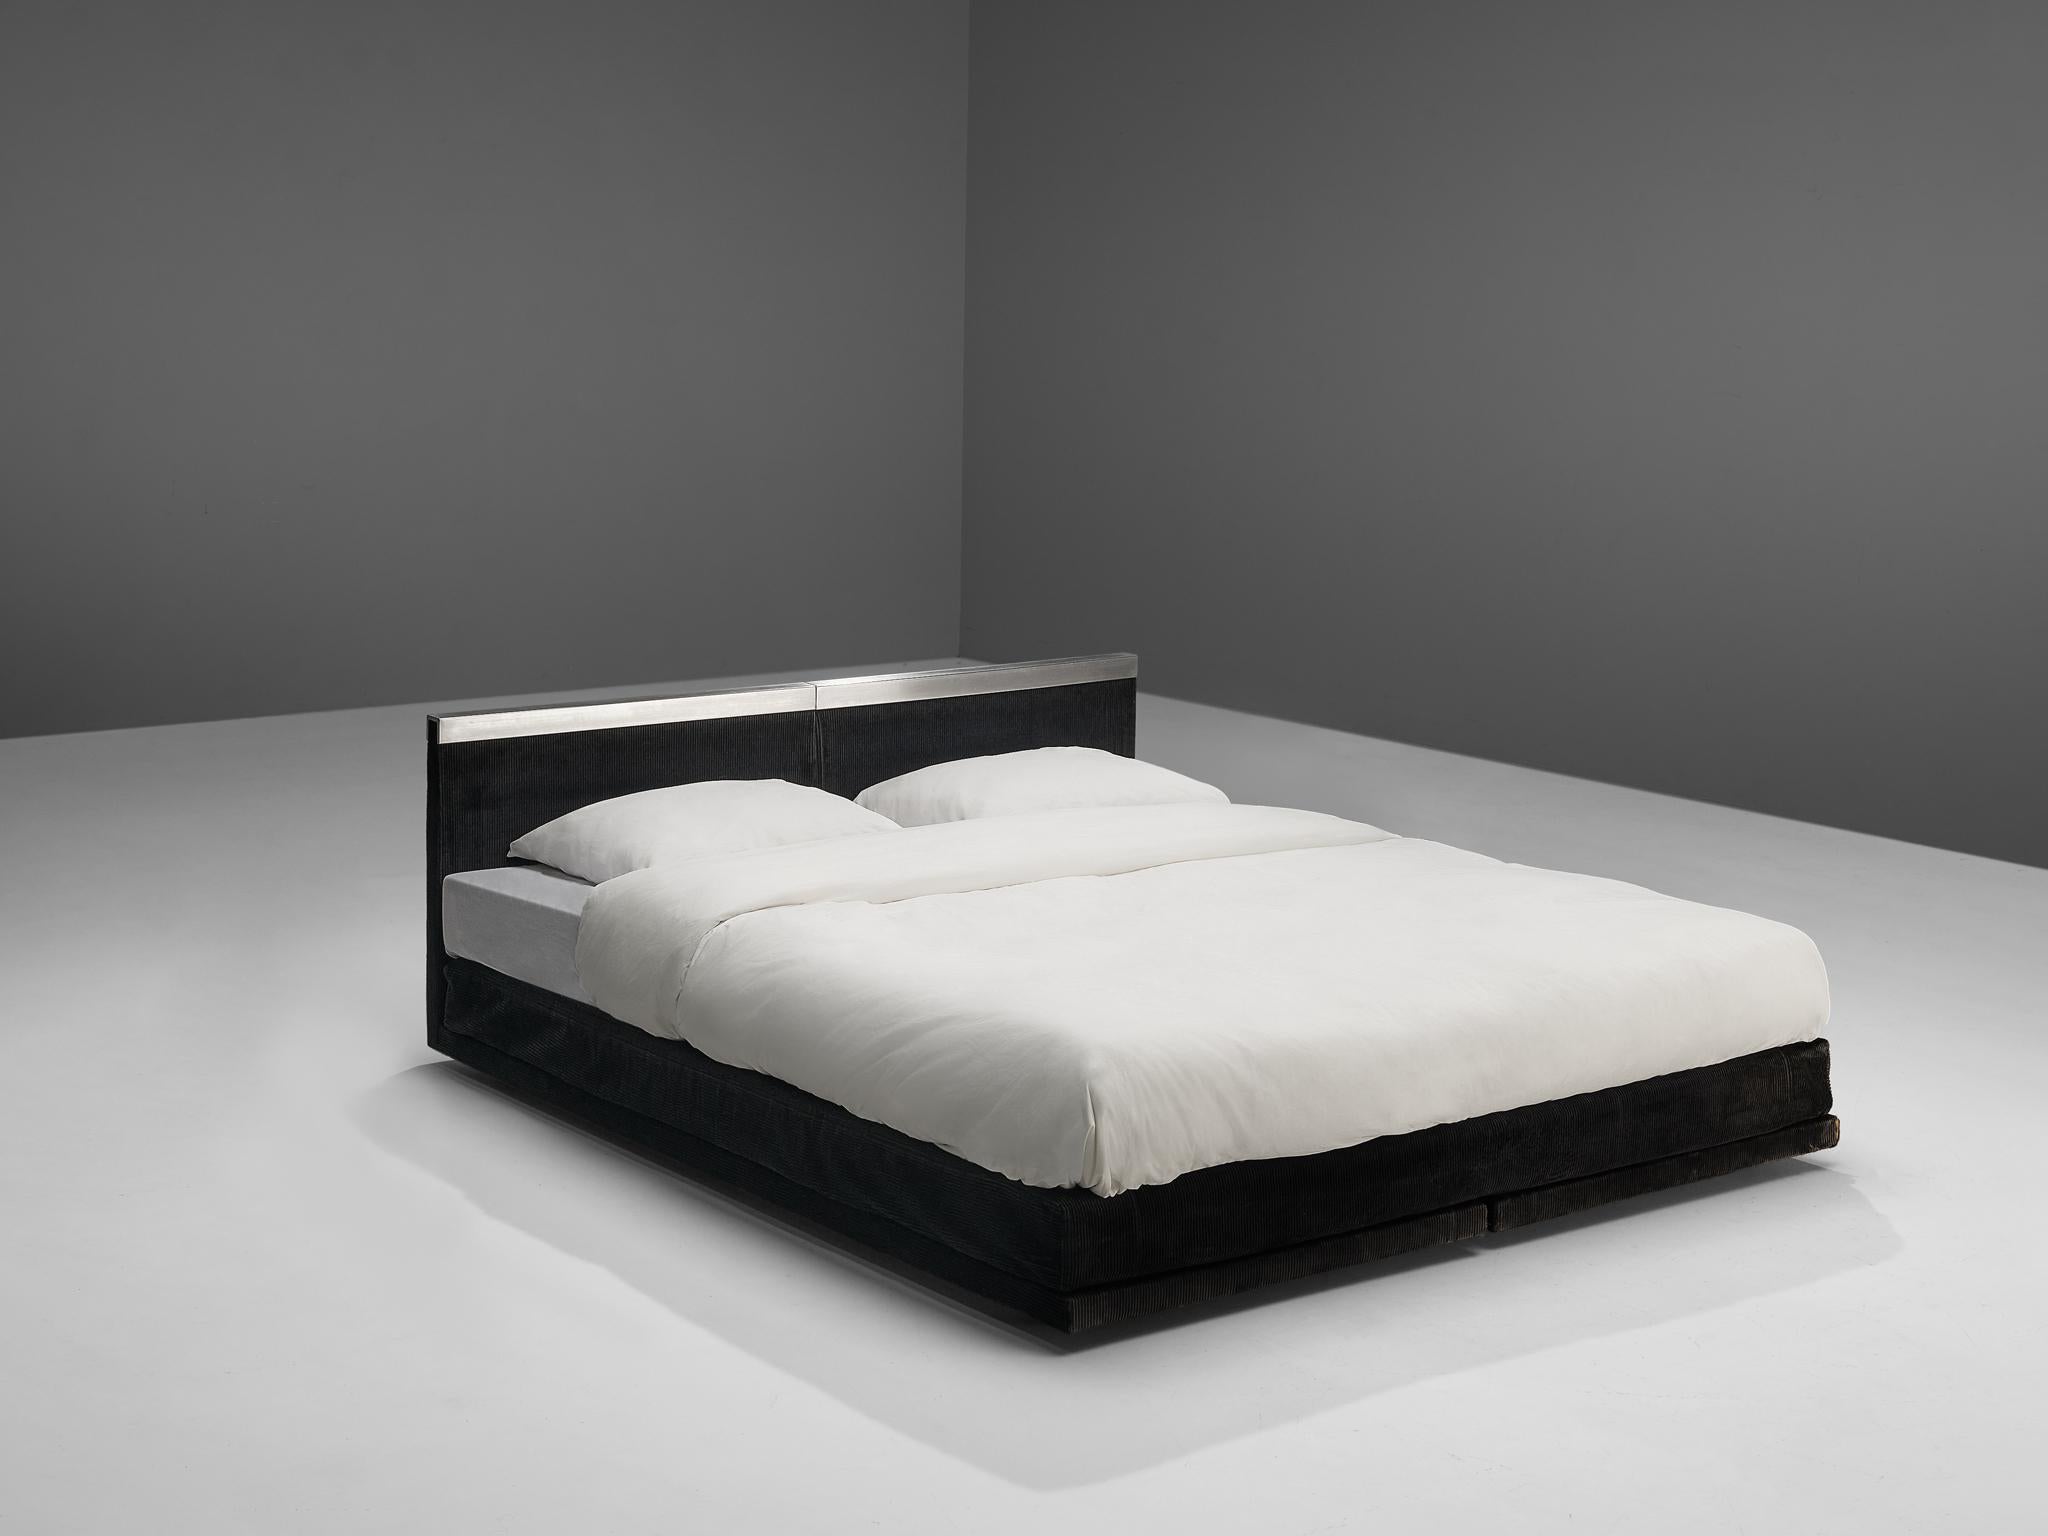 Bazzani, Bett, schwarz gepolstert, Aluminium, Italien, um 1975

Einzigartiges maßgefertigtes Bett mit schwarzer Polsterung und Aluminiumdetails am Kopfteil. Dieses Bett wurde von Bazzani für das Haus von Mariangela Johnson und Roberto Pasqualetti